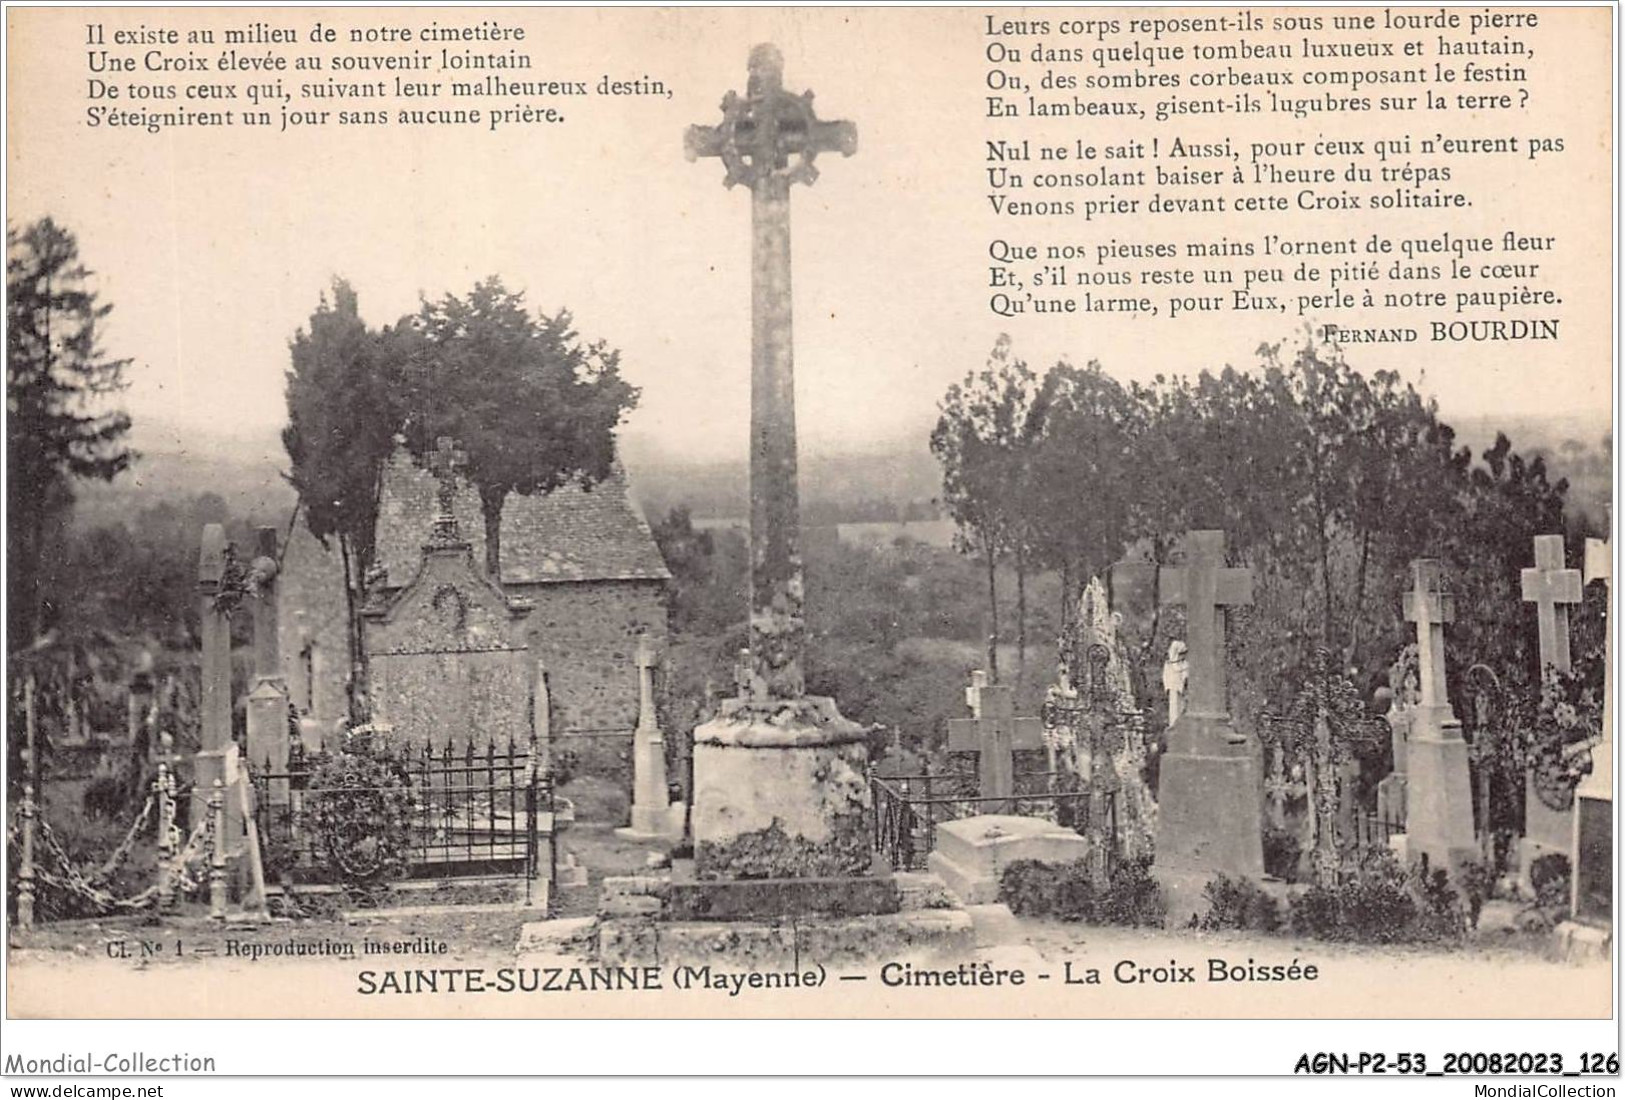 AGNP2-0137-53 - SAINTE-SUZANNE - Cimetière - La Croix Boissée - Sainte Suzanne